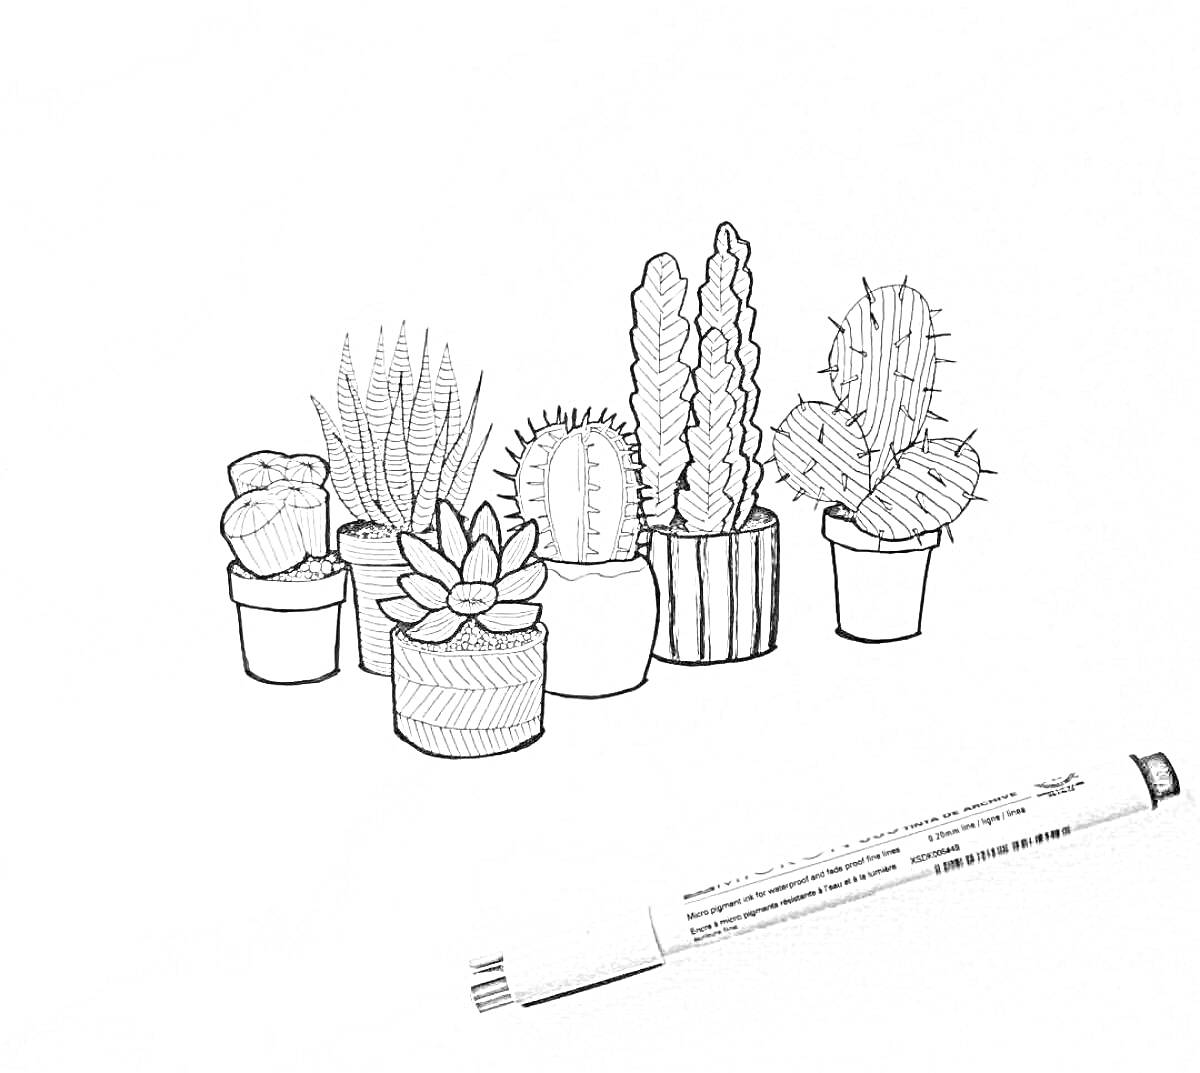 Раскраска Раскраска с изображением шести горшков с кактусами и суккулентами на белом фоне с черным маркером в правом нижнем углу